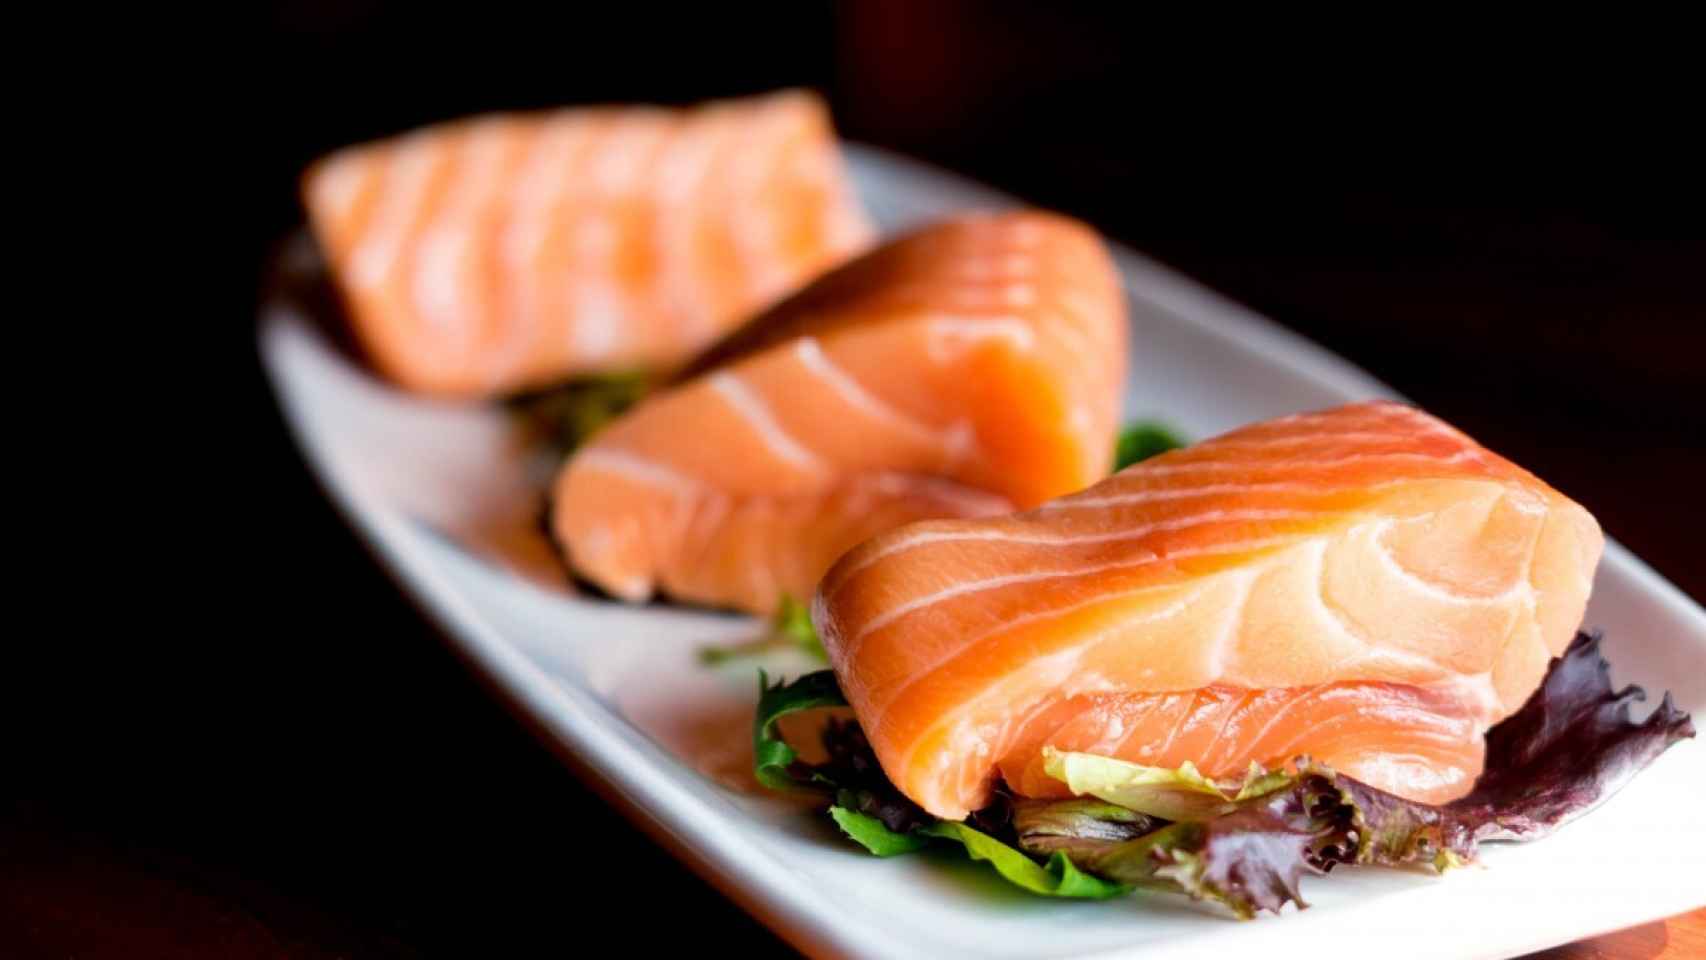 El salmón es una excelente fuente de grasa saludable